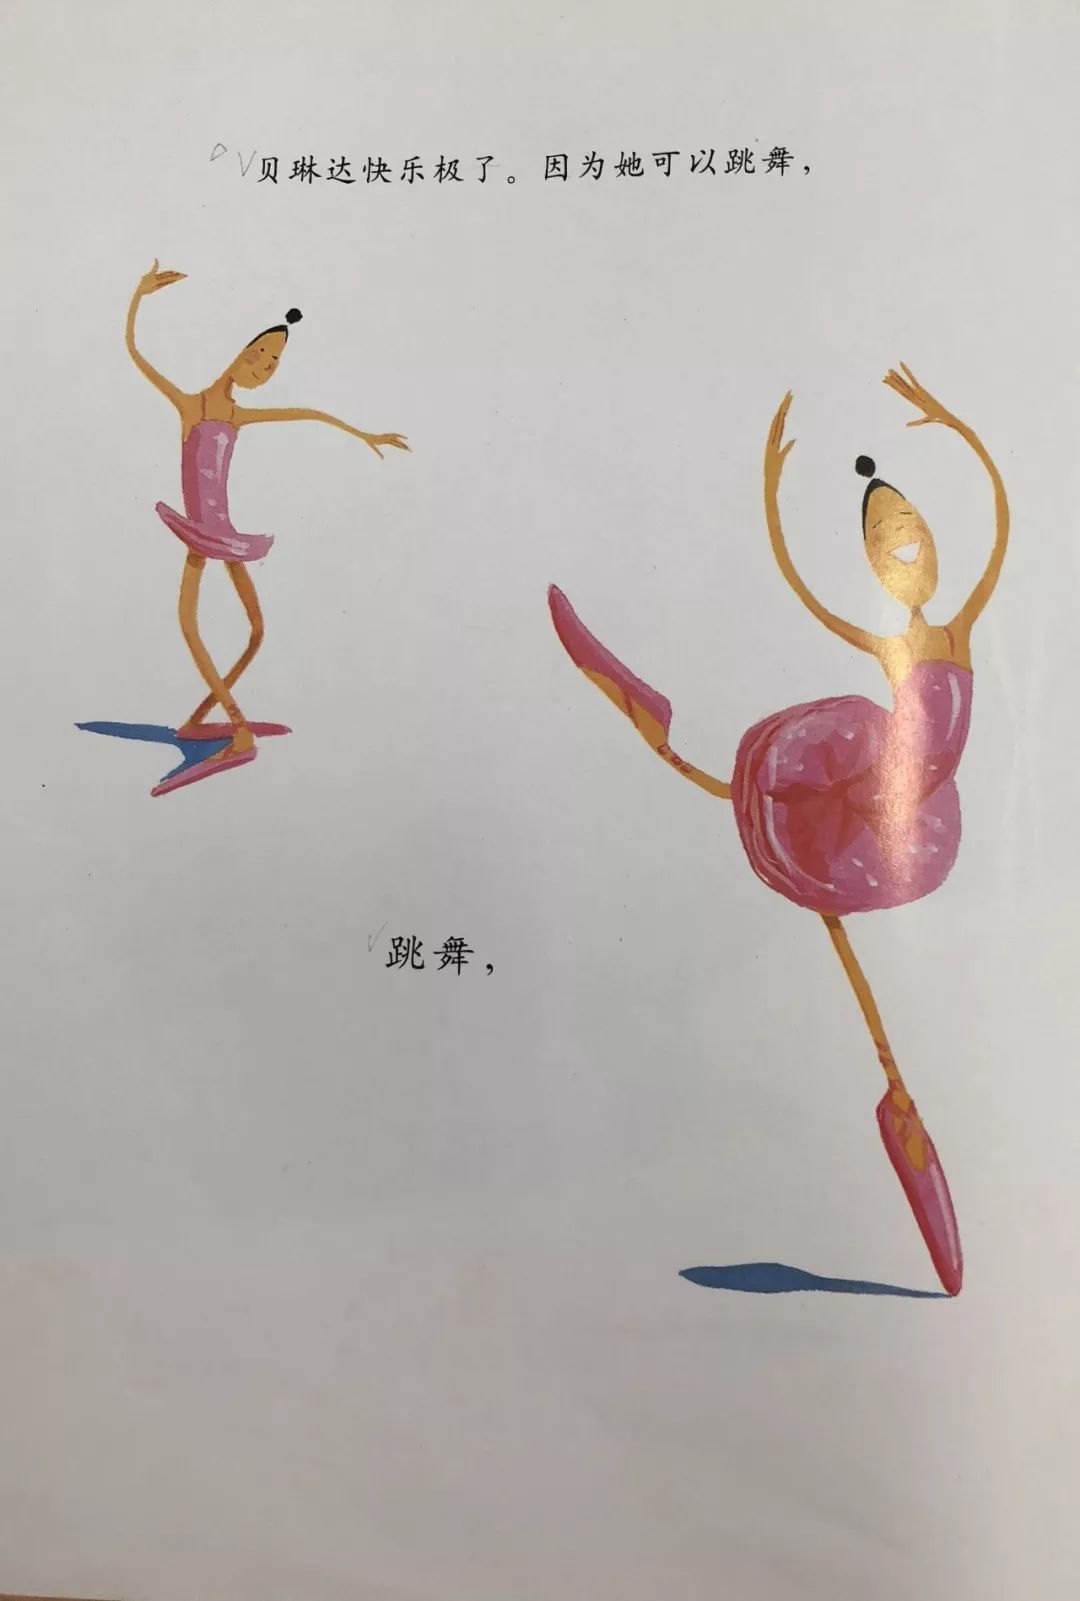 【有声故事】第74期《大脚丫跳芭蕾》